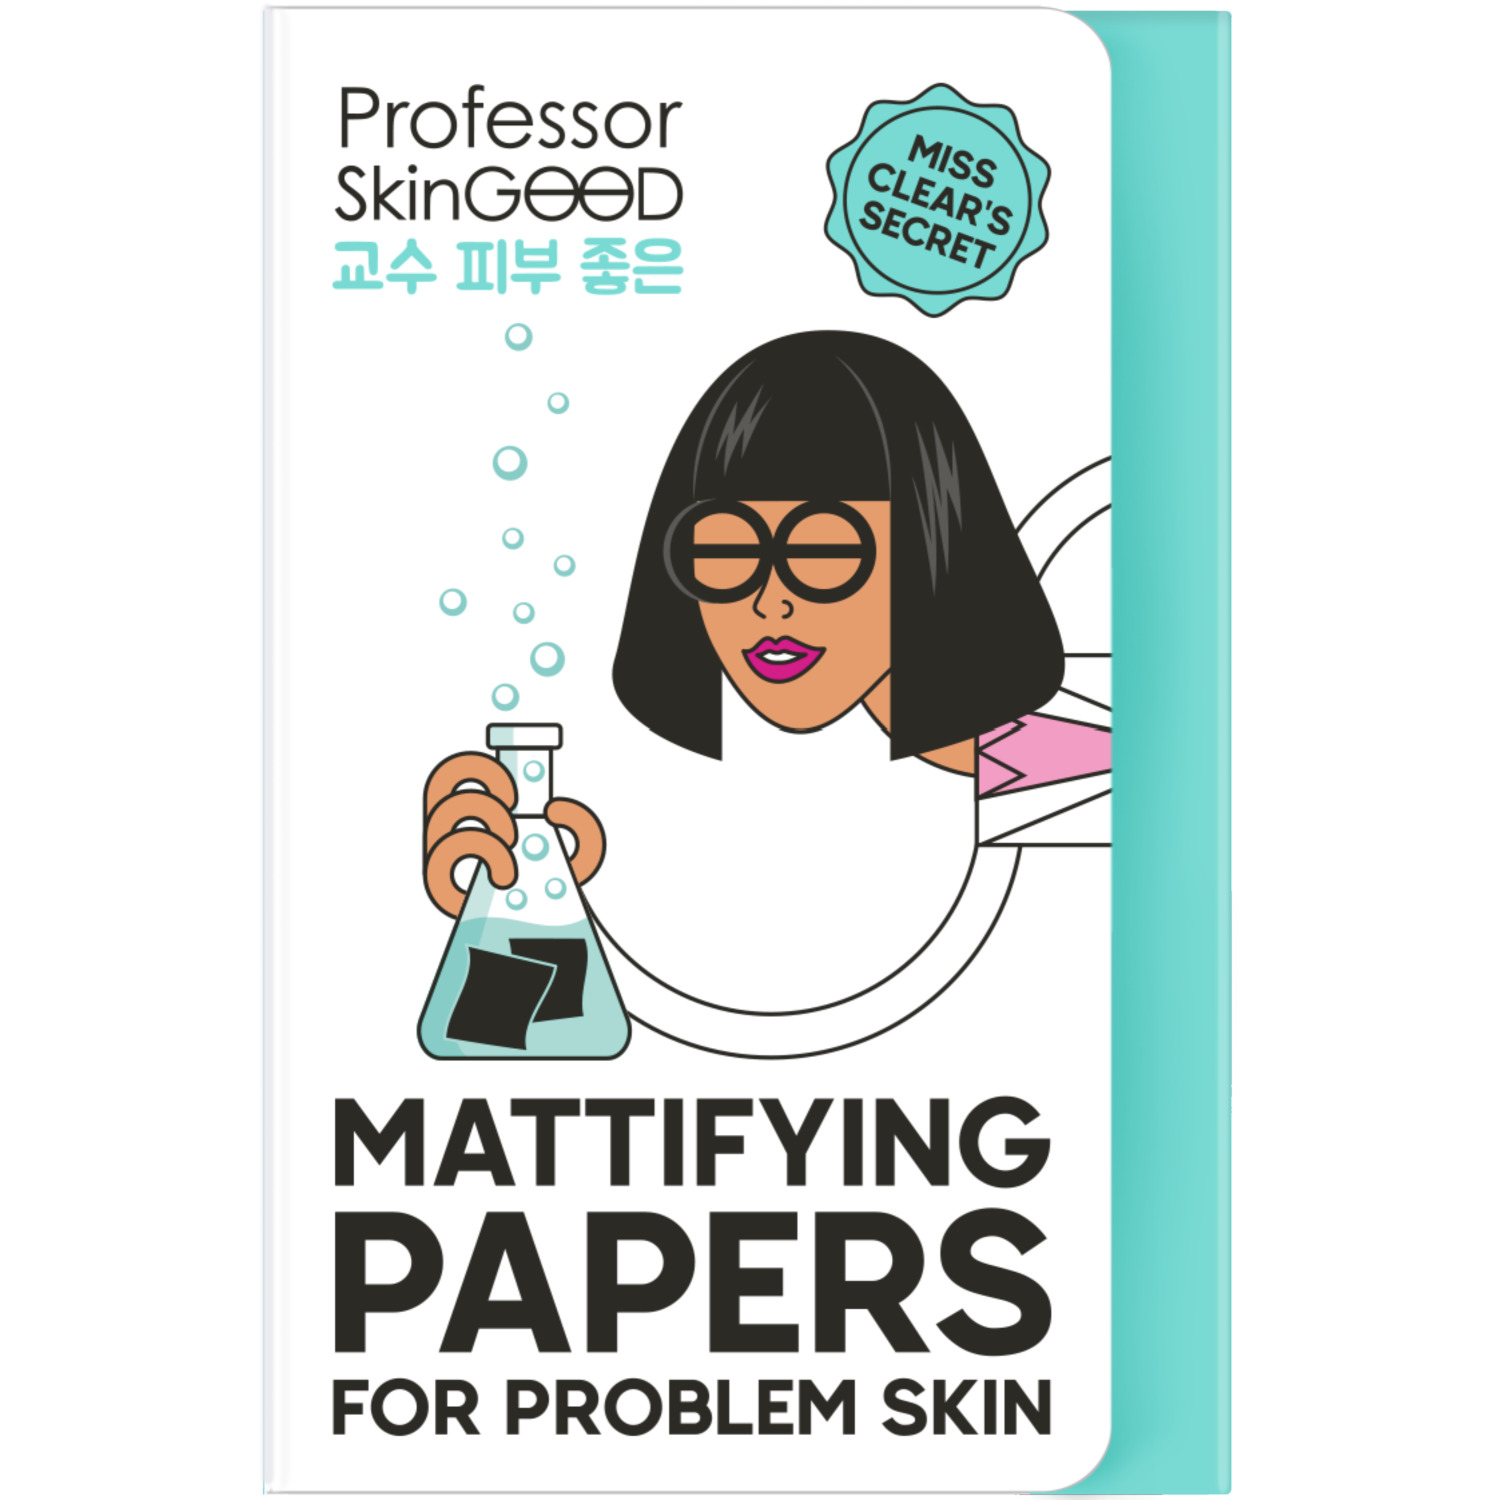 Салфетки Professor SkinGood Mattifying Papers матирующие для проблемной кожи 50 шт матирующие салфетки mattifying papers